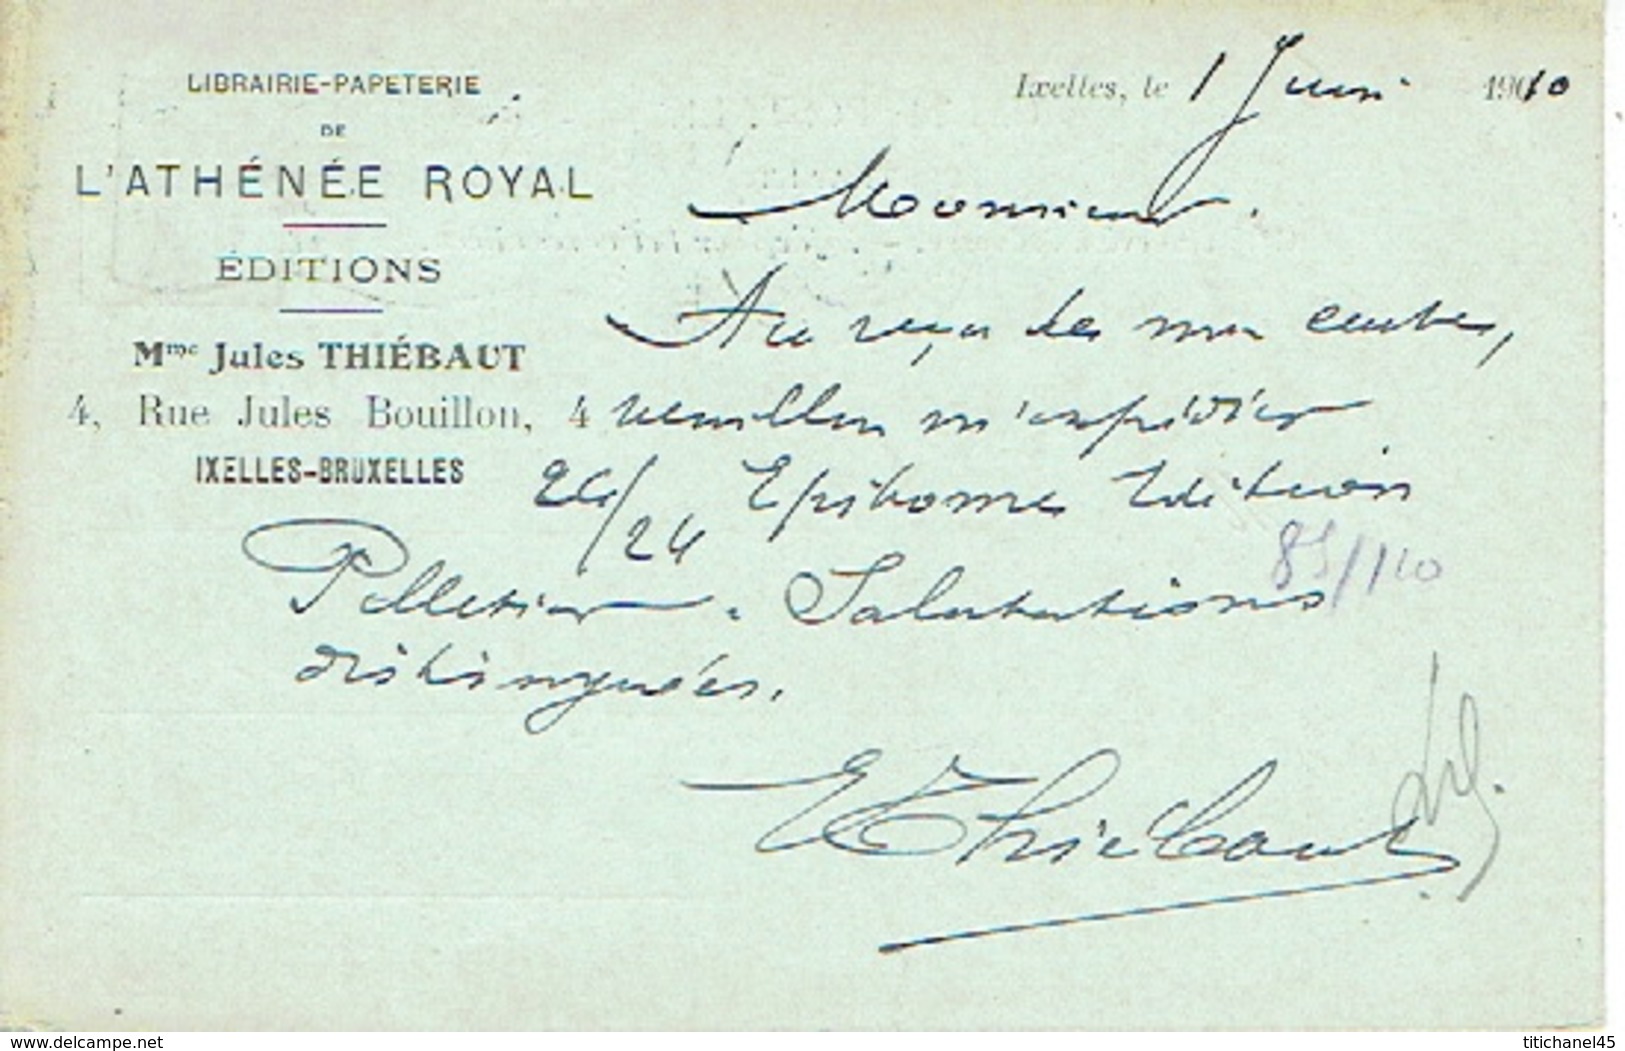 CP/PK Publicitaire IXELLES-BRUXELLES 1910 - Librairie-Papeterie De L'ATHENEE ROYAL - EDITIONS - Mme Jules THIEBAUT - Ixelles - Elsene